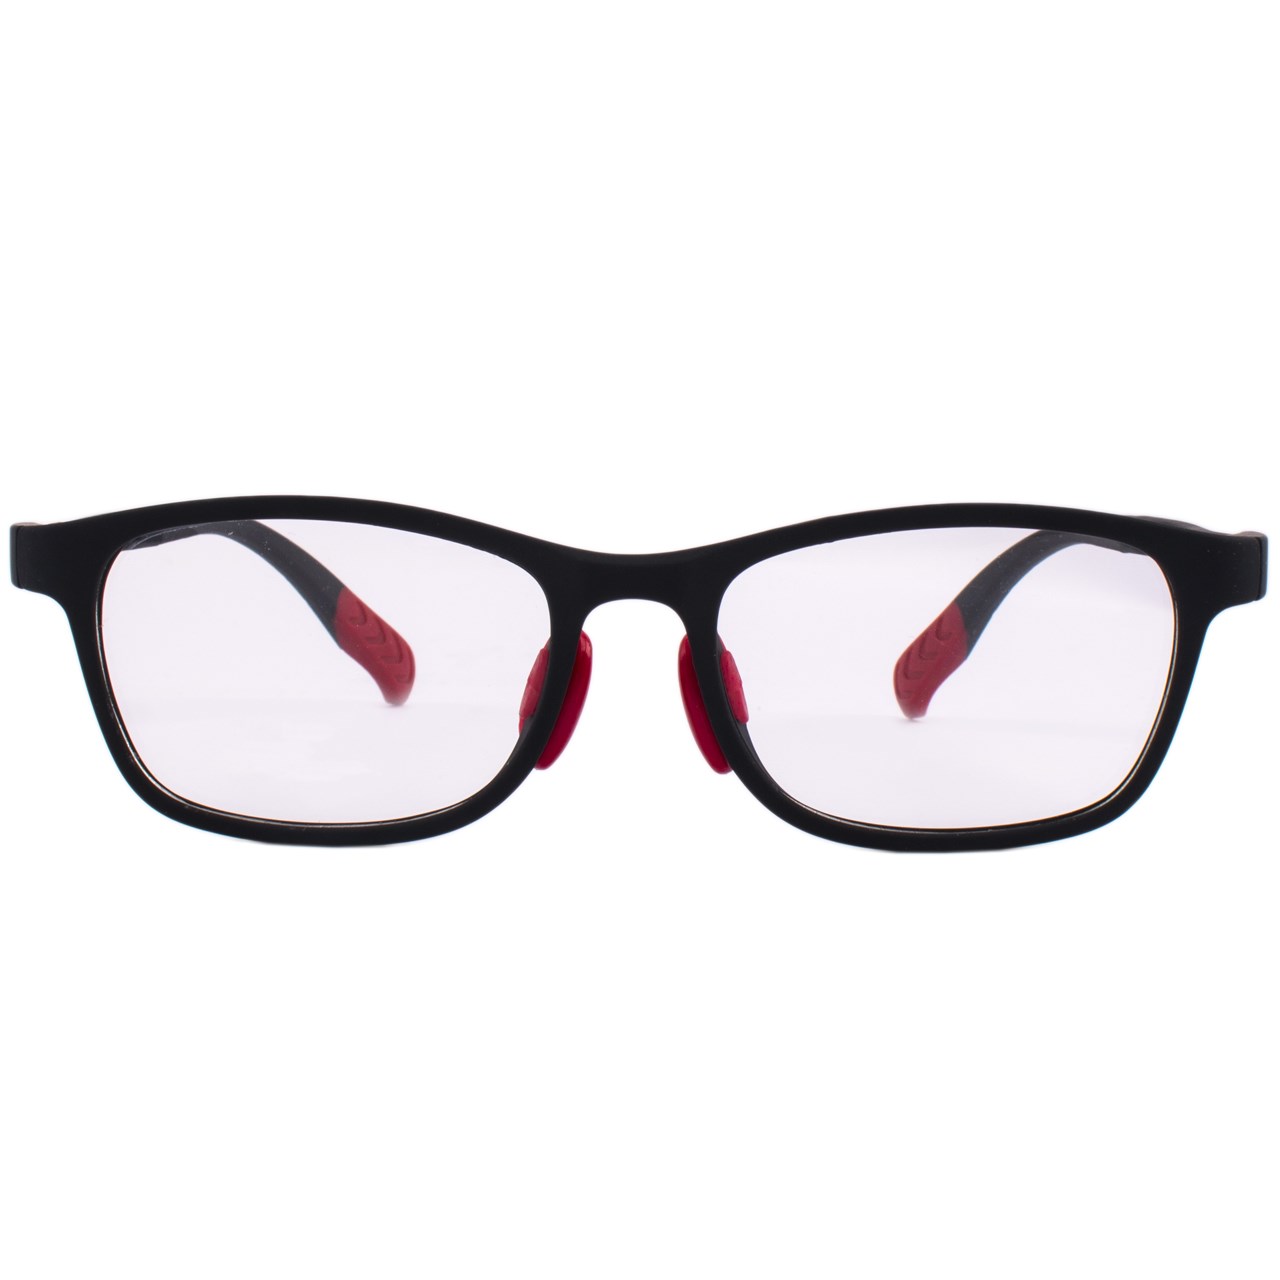 فریم عینک بچگانه واته مدل 2105C1